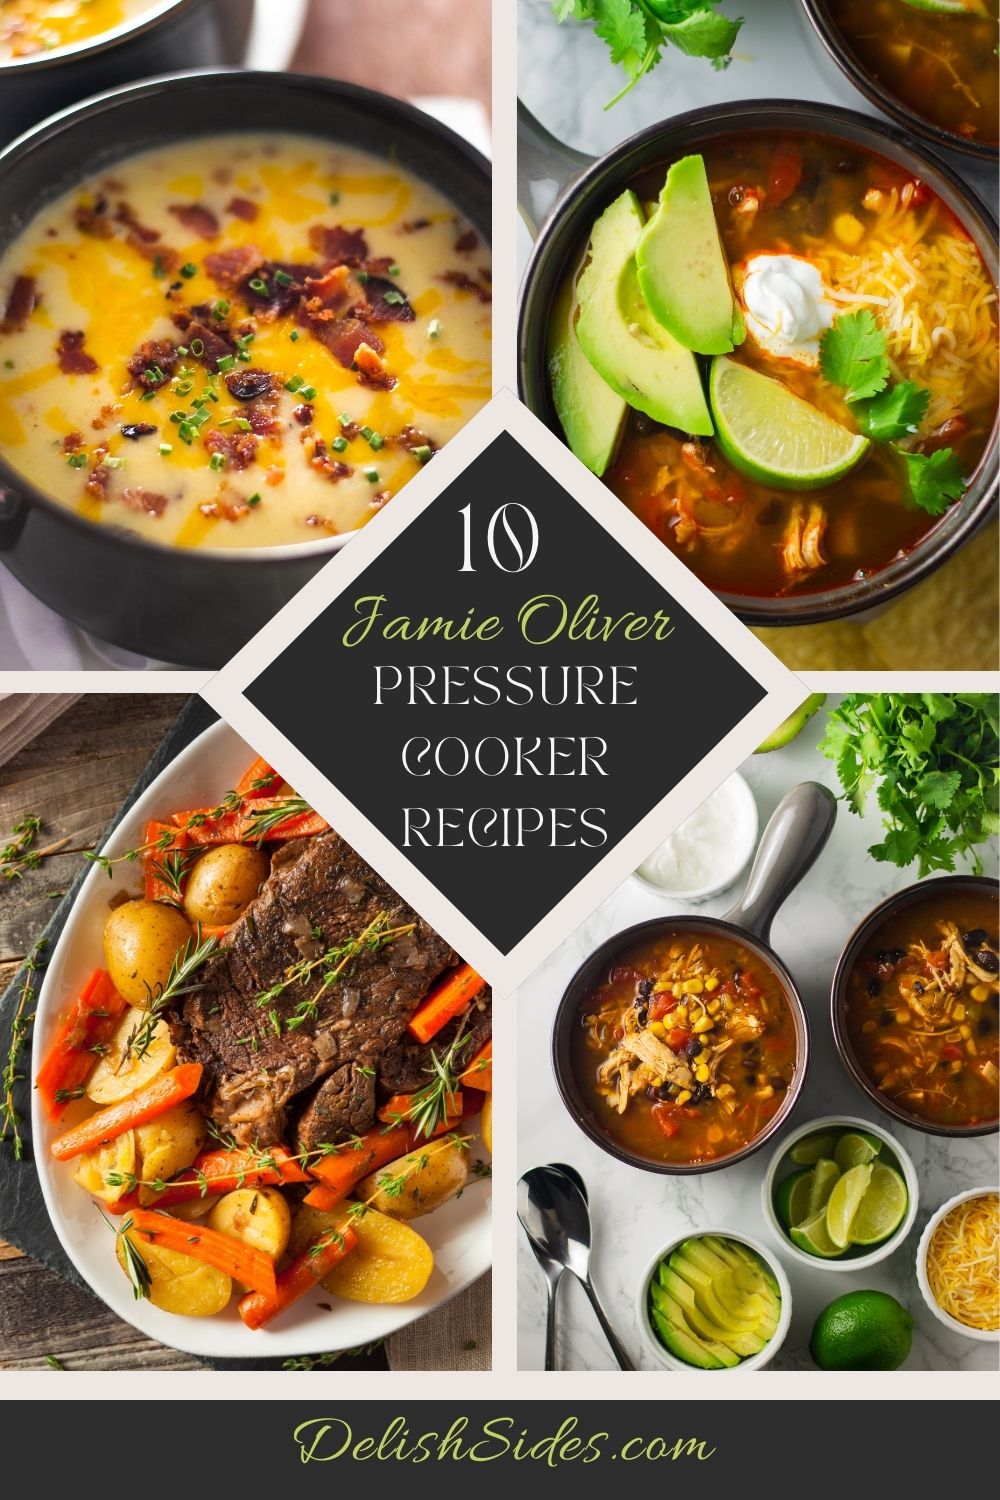 10 Jamie Oliver Pressure Cooker Recipes